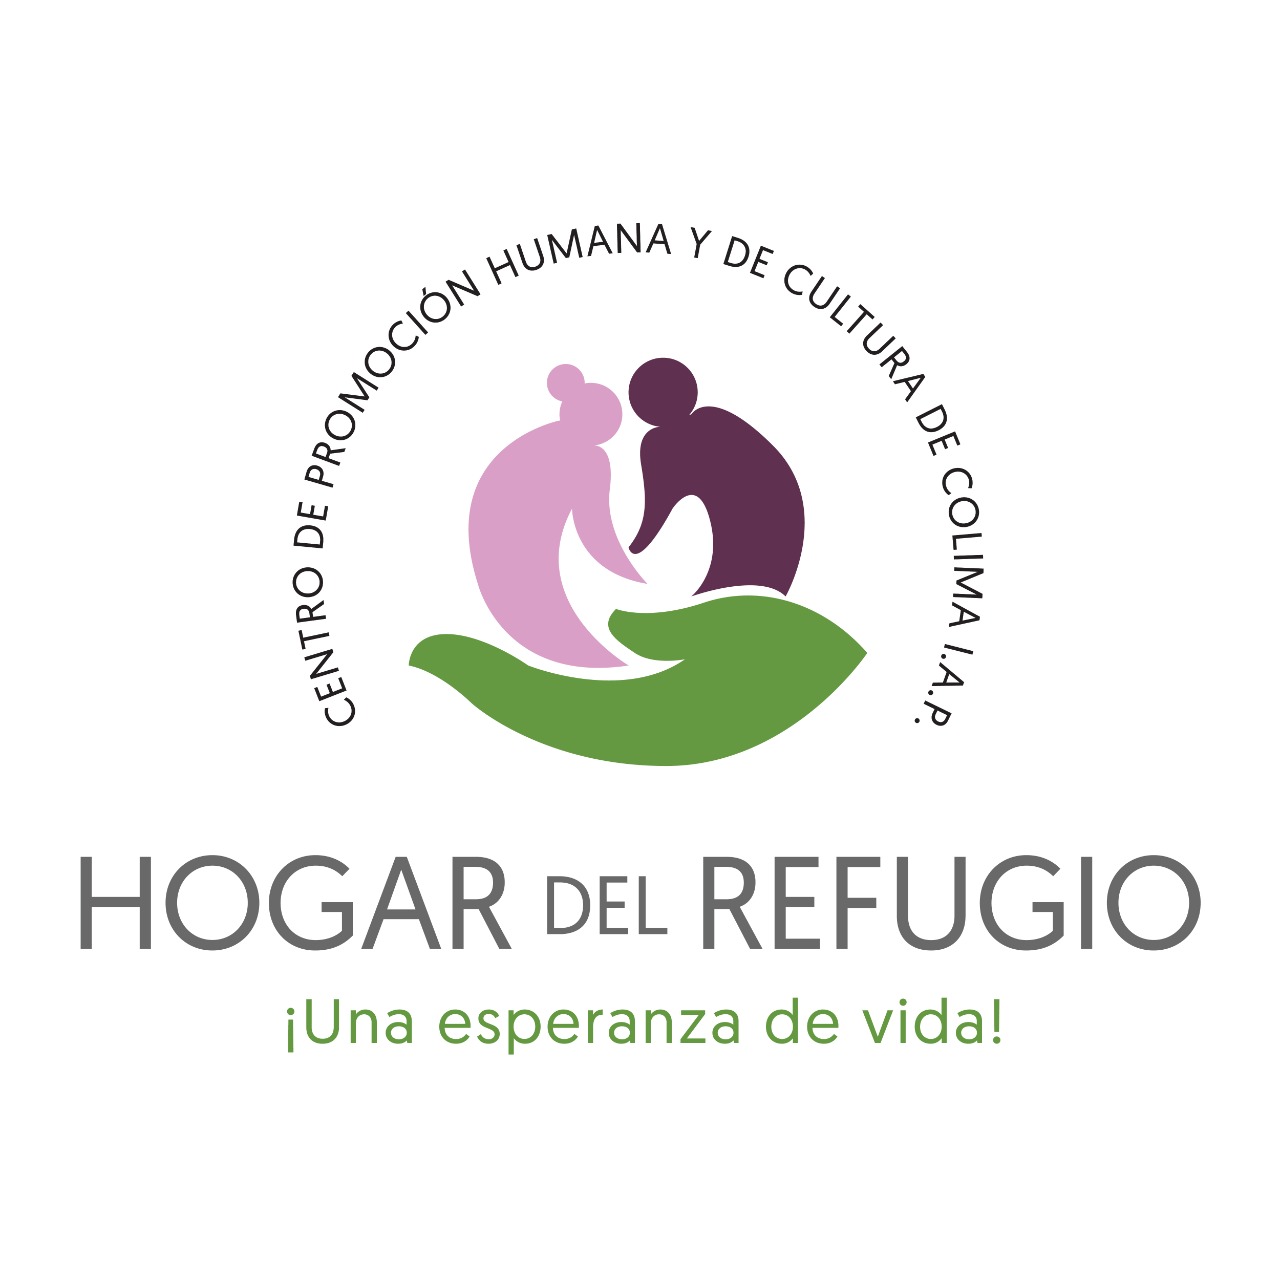 Centro de Promoción Humana y de Cultura de Colima, I.A.P.